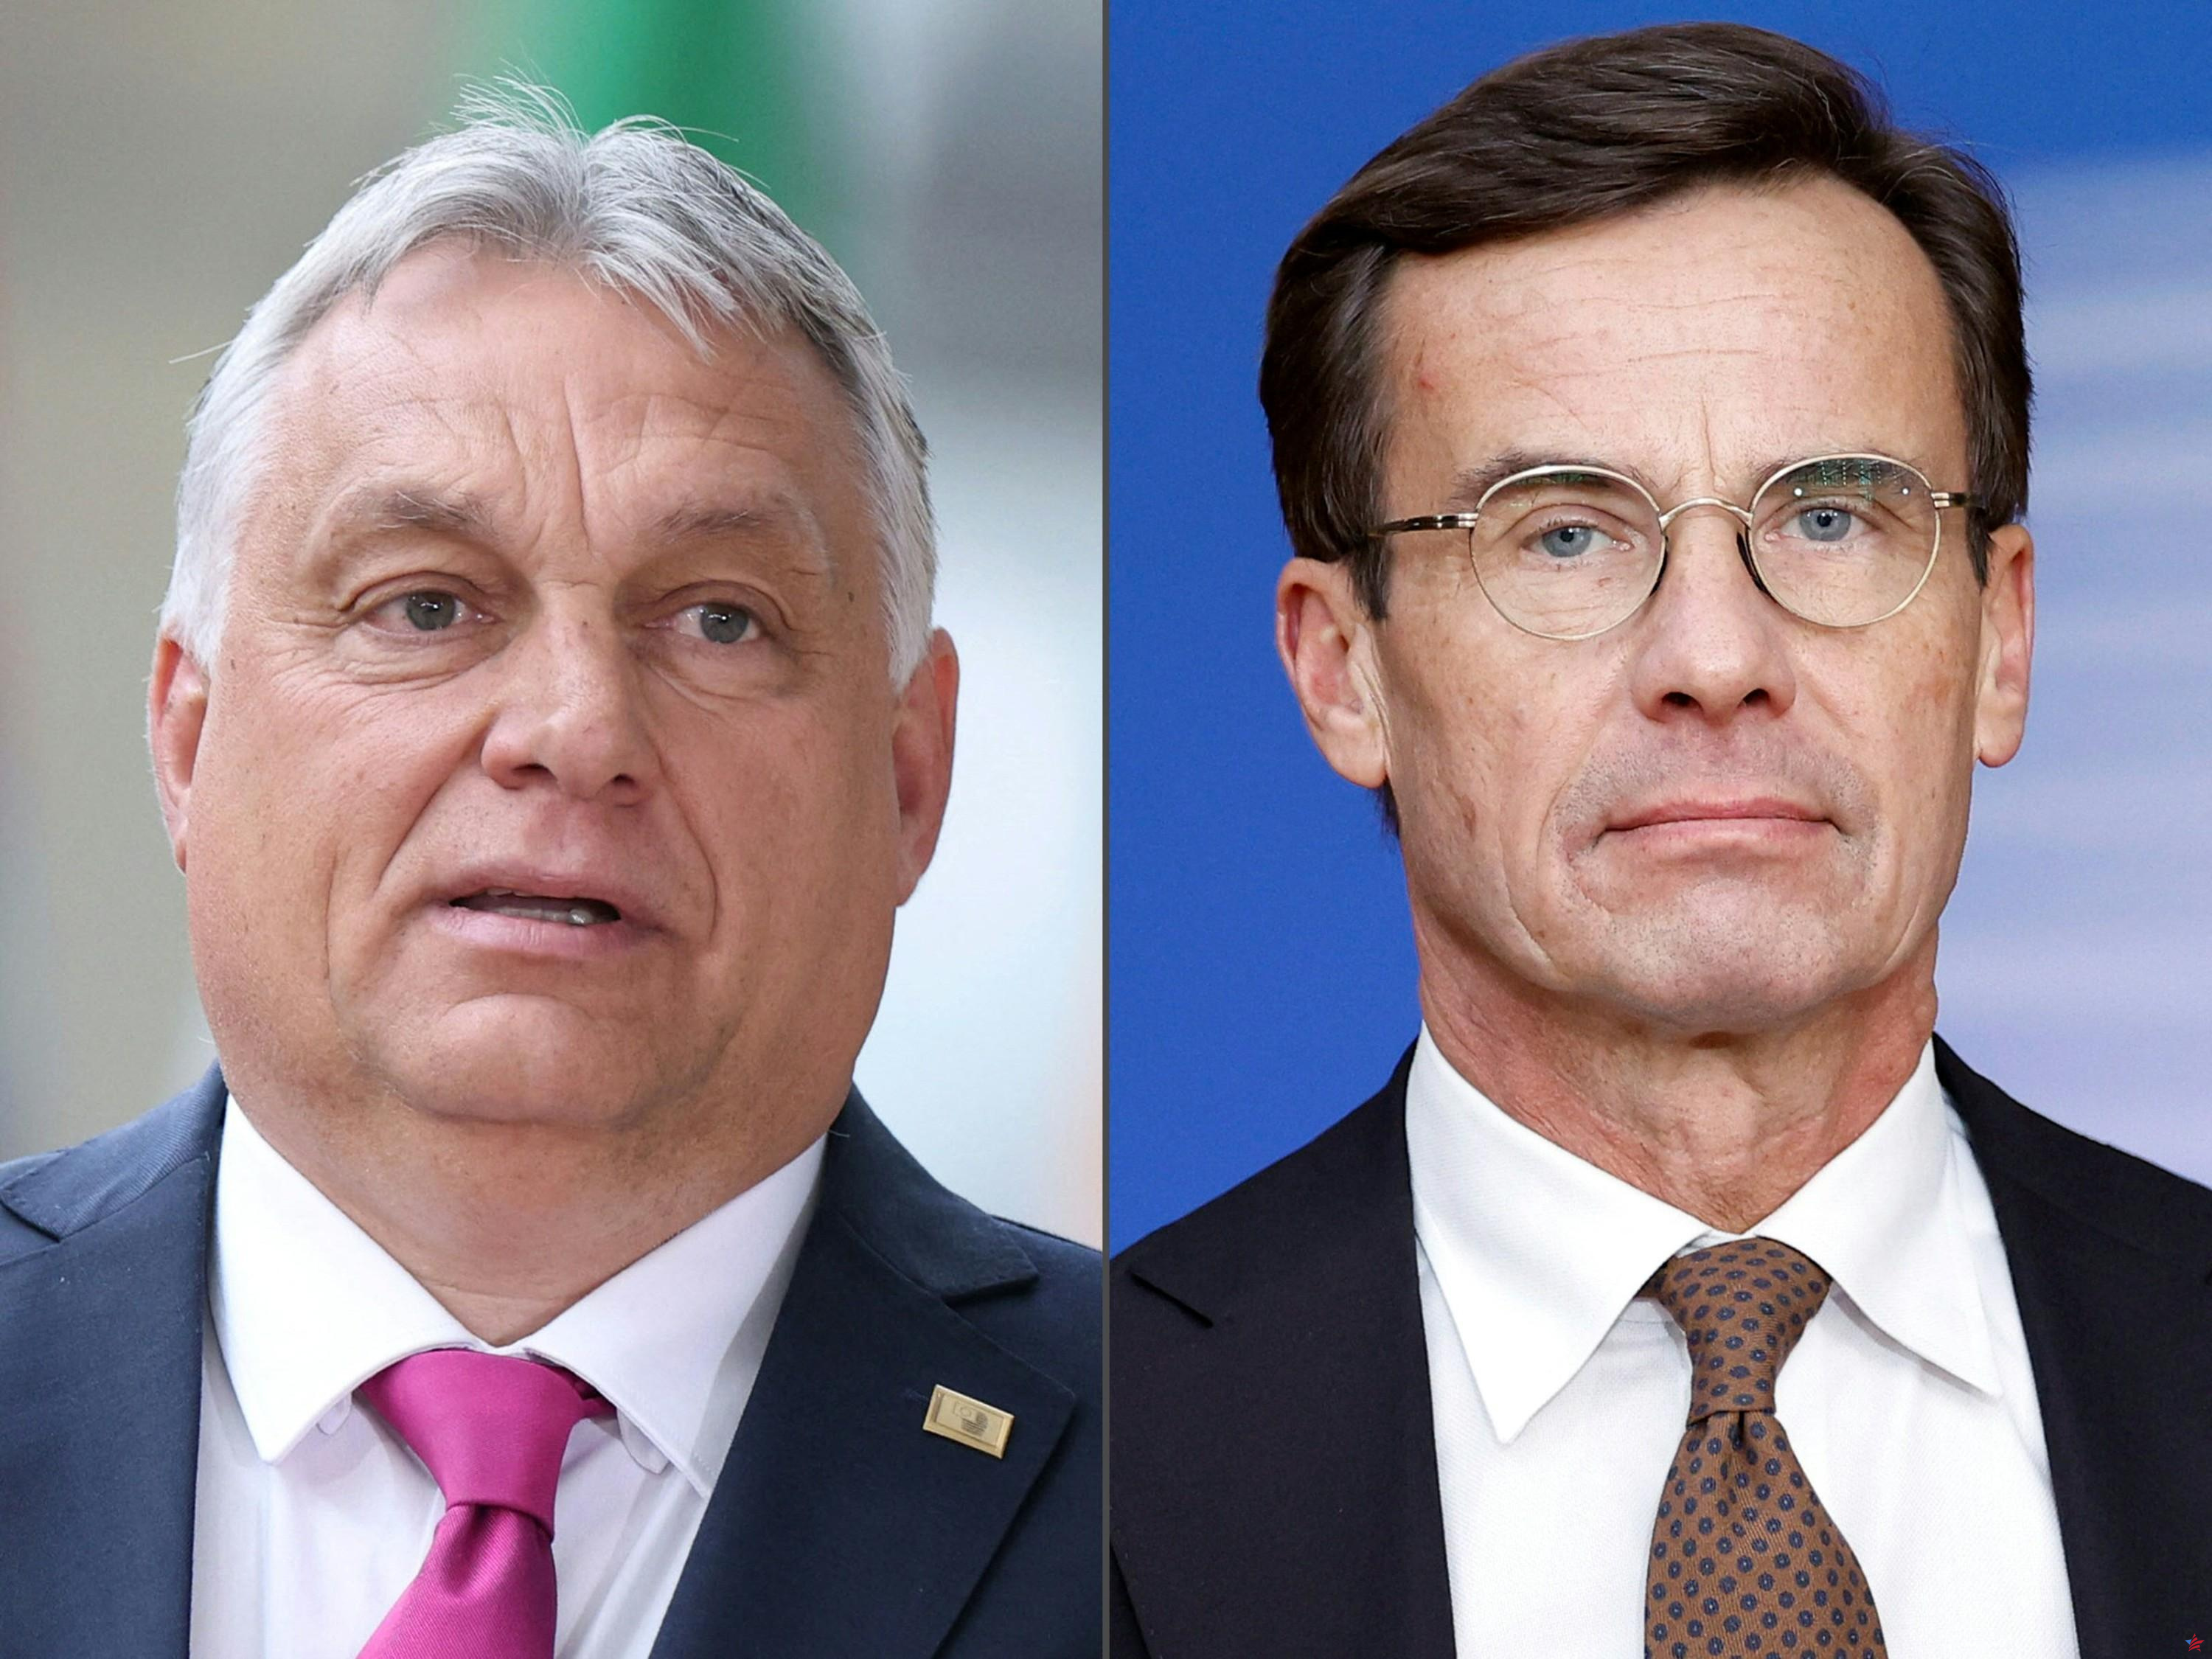 Pertenencia sueca a la OTAN: Ulf Kristersson no “negociará” con Viktor Orban